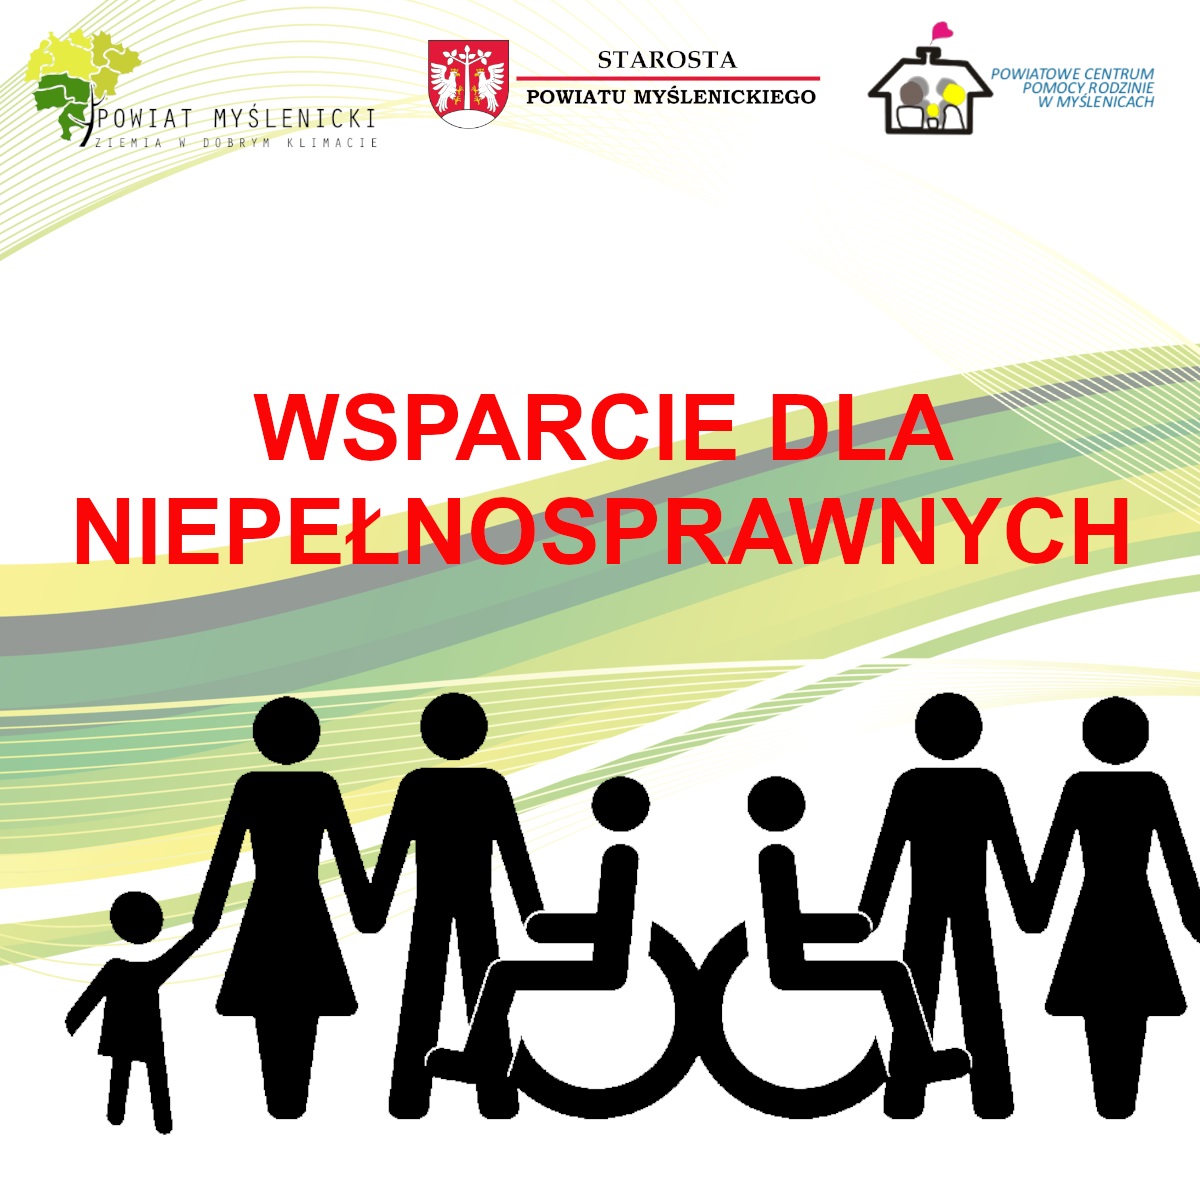 Grafika prezentuje hasło wsparcie dla niepełnosprawnych, poprzez działania Powiatu Myślenickiego i Powiatowego Centrum Pomocy Rodzinie w Myślenicach 